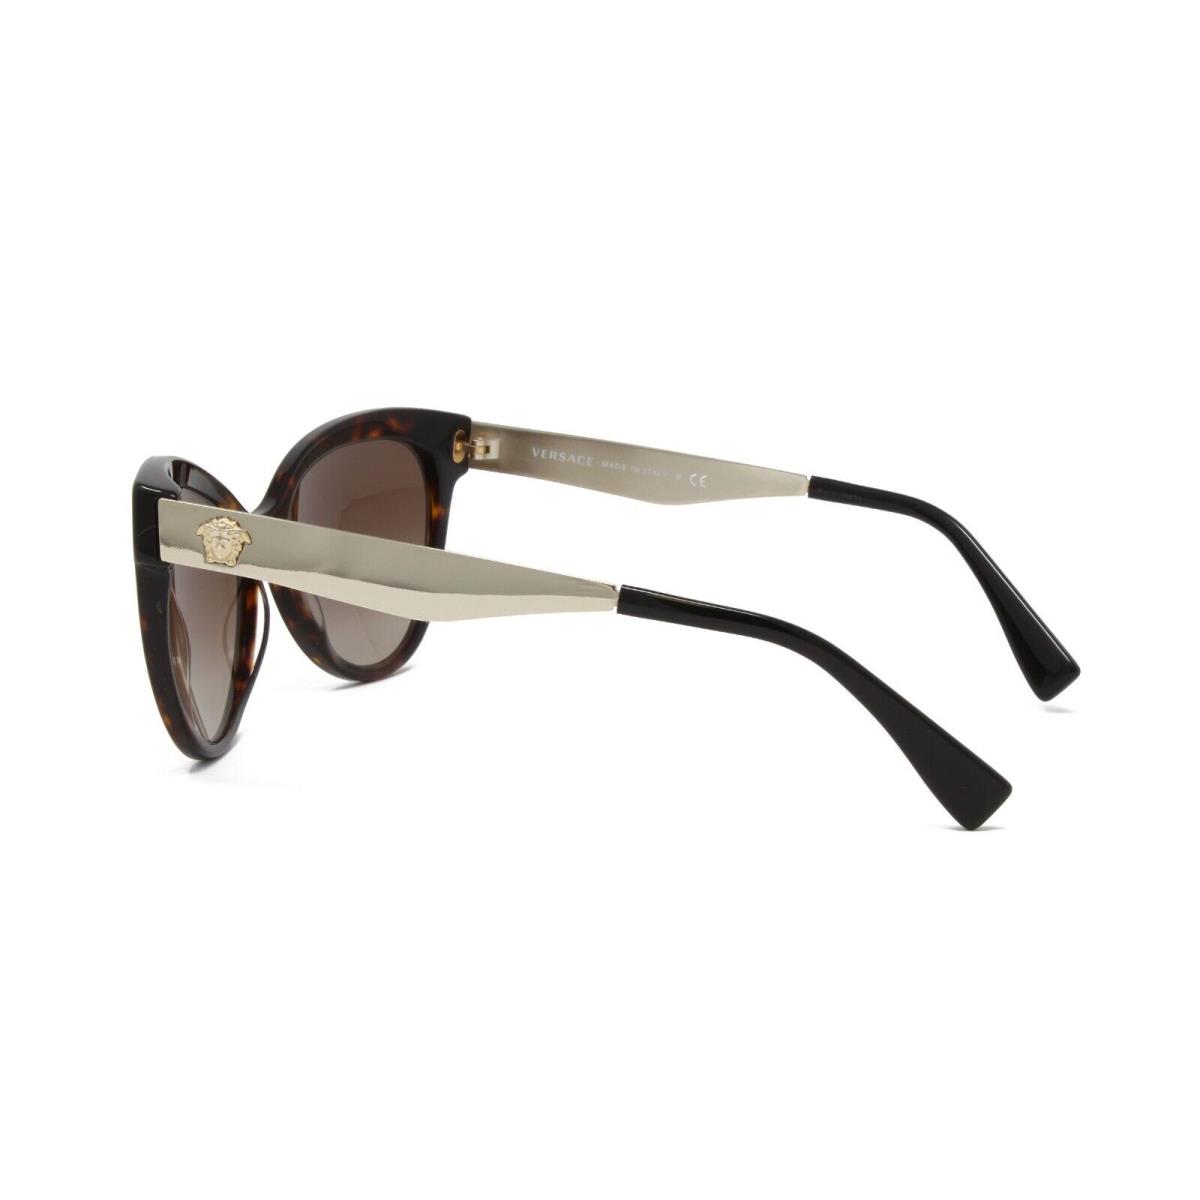 Versace sunglasses Frame - Dark Havana Black Frame, Gray Lens 2